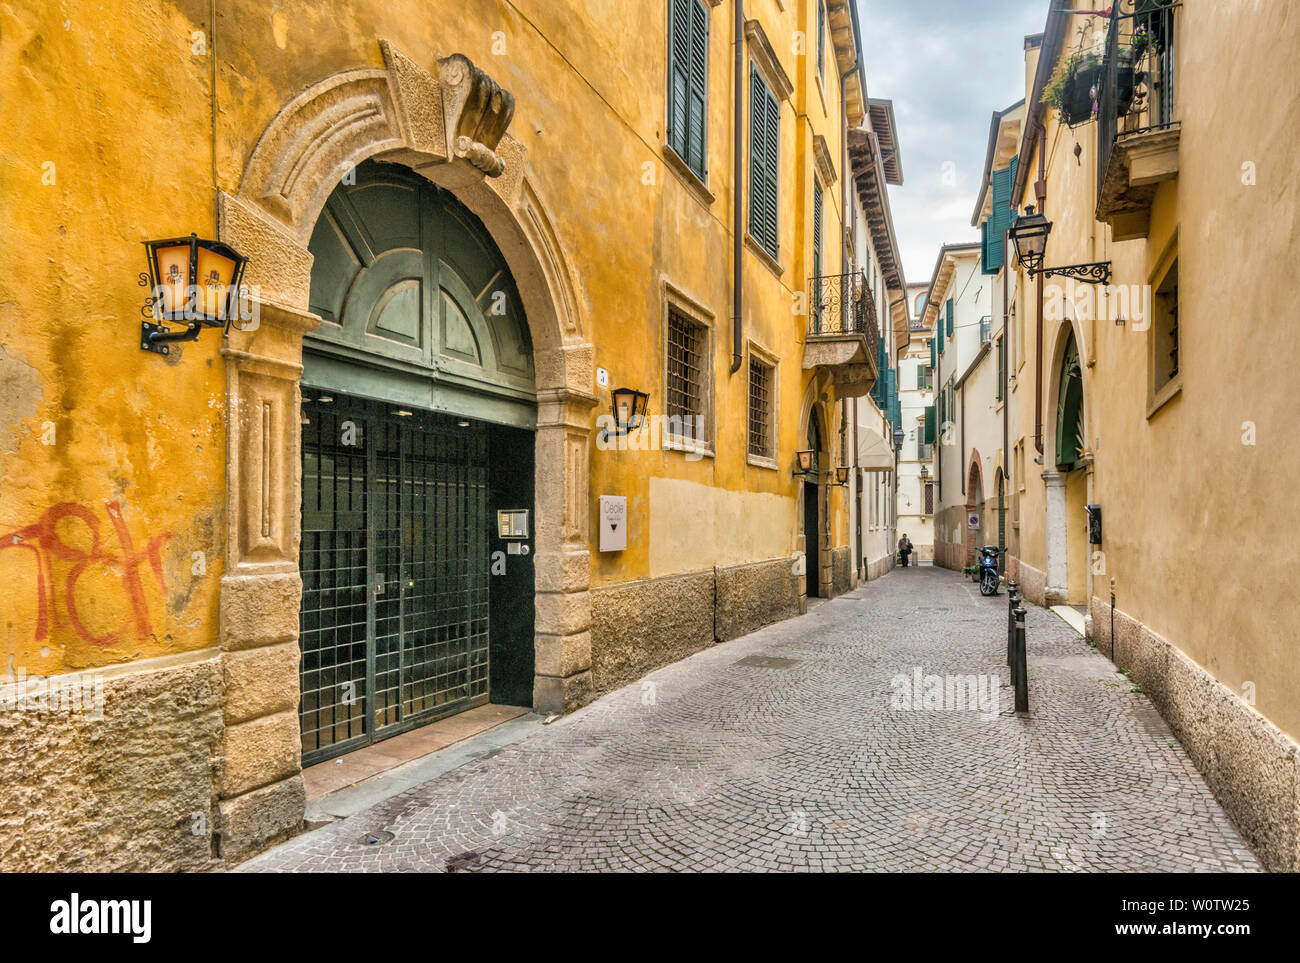 Vicolo Rensi, passage in historic center of Verona, Veneto, Italy Stock Photo